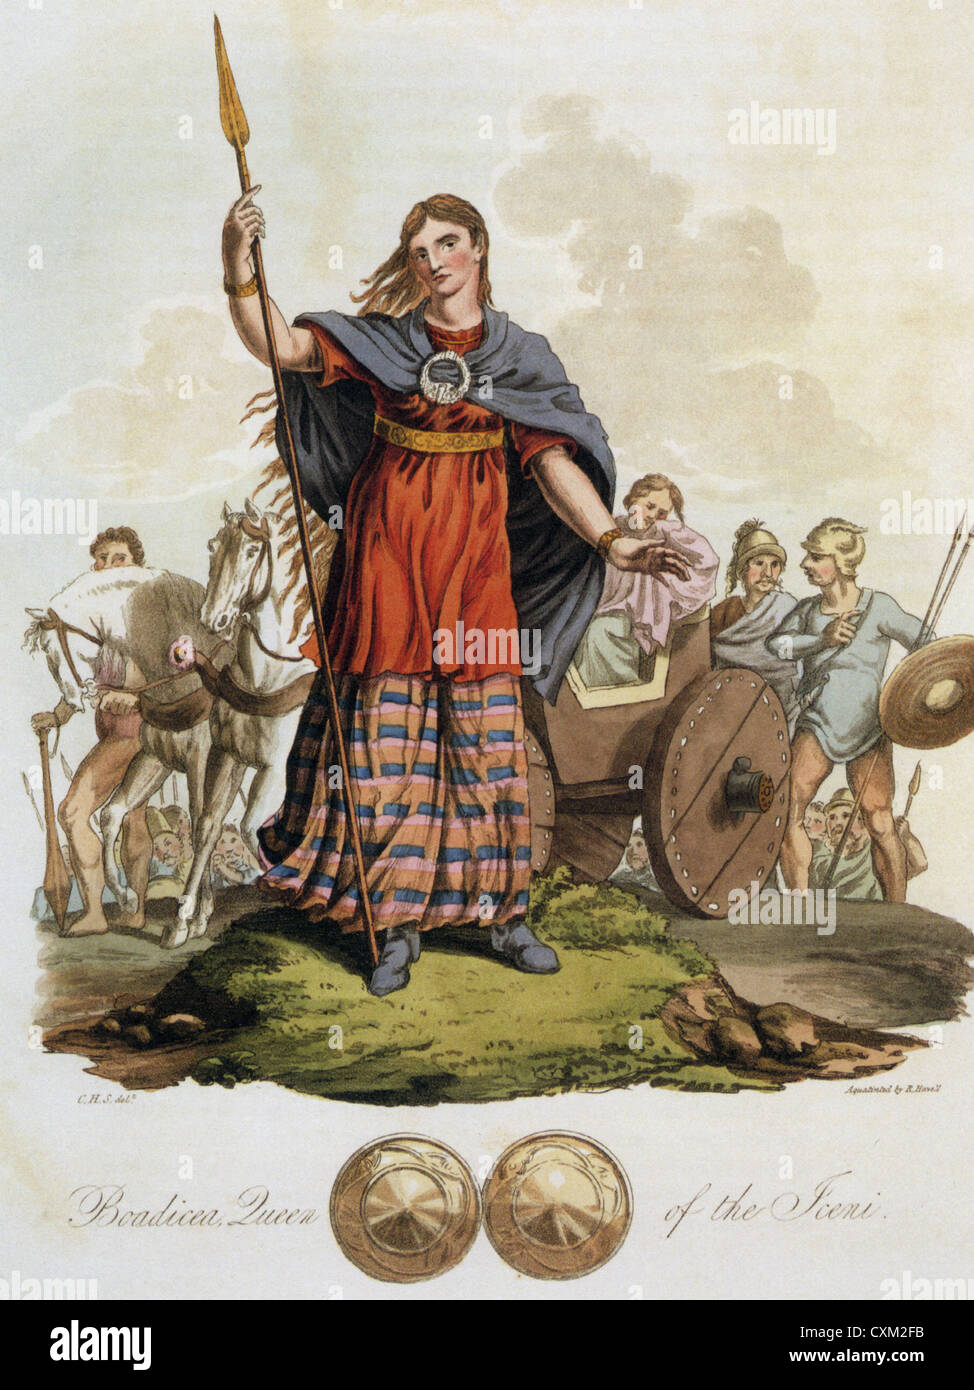 BOADICEA (aka Boadicea) 1812 Gravur der Königin des britischen Icener Stammes, die die Römer gekämpft Stockfoto